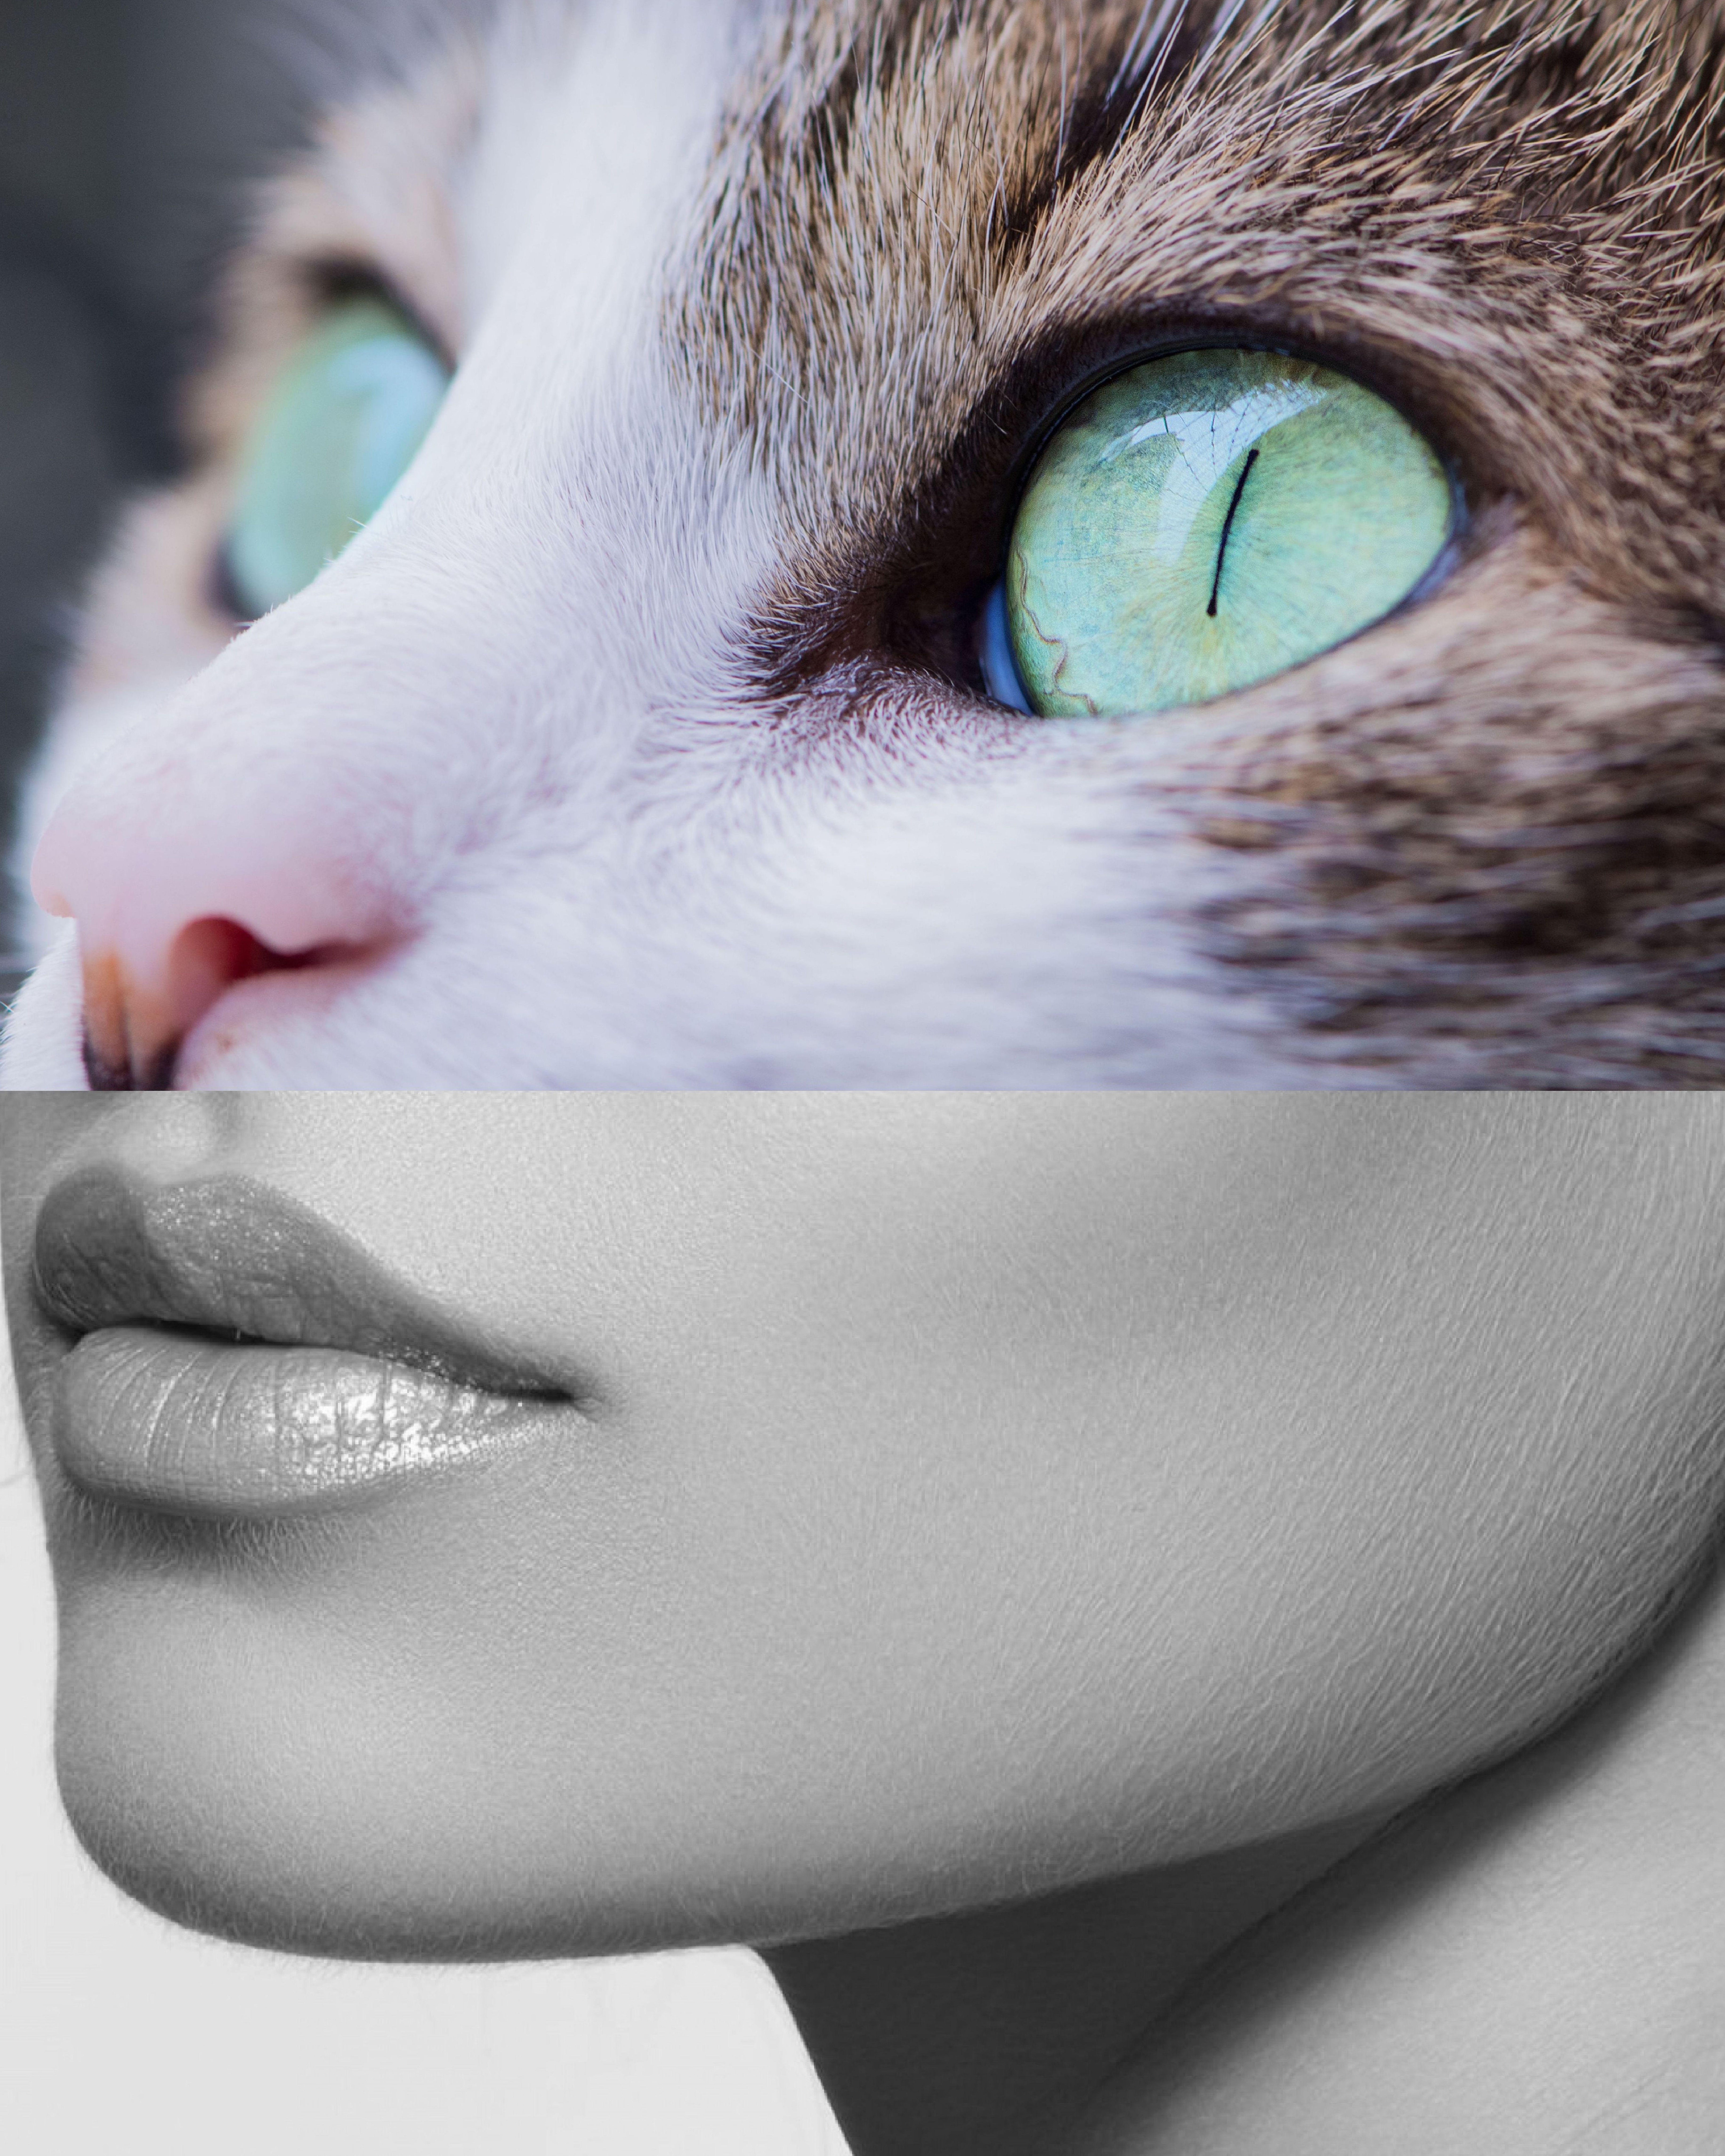 Kiki Collagist Portrait Photograph - Cat Woman